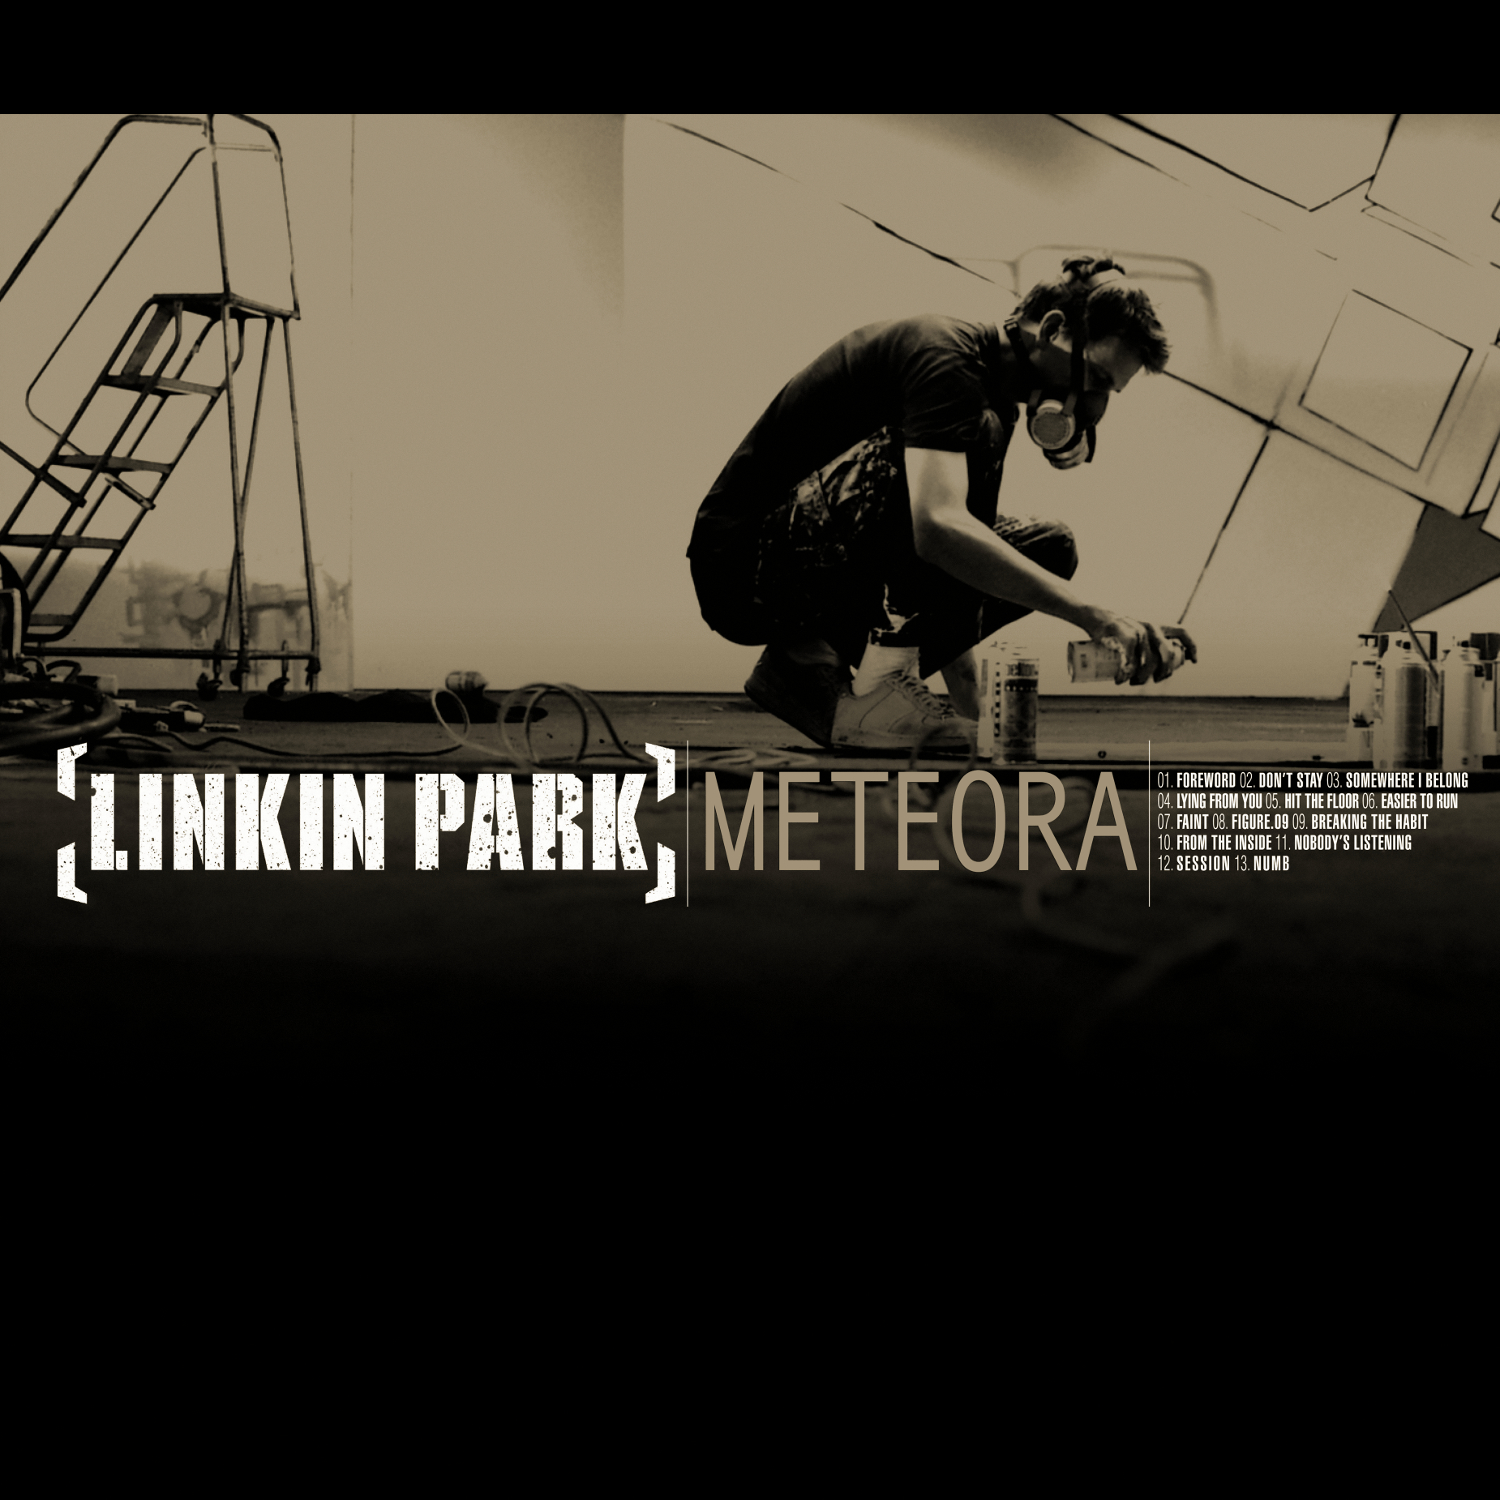 princip Ombord udstilling Meteora | Linkin Park Wiki | Fandom